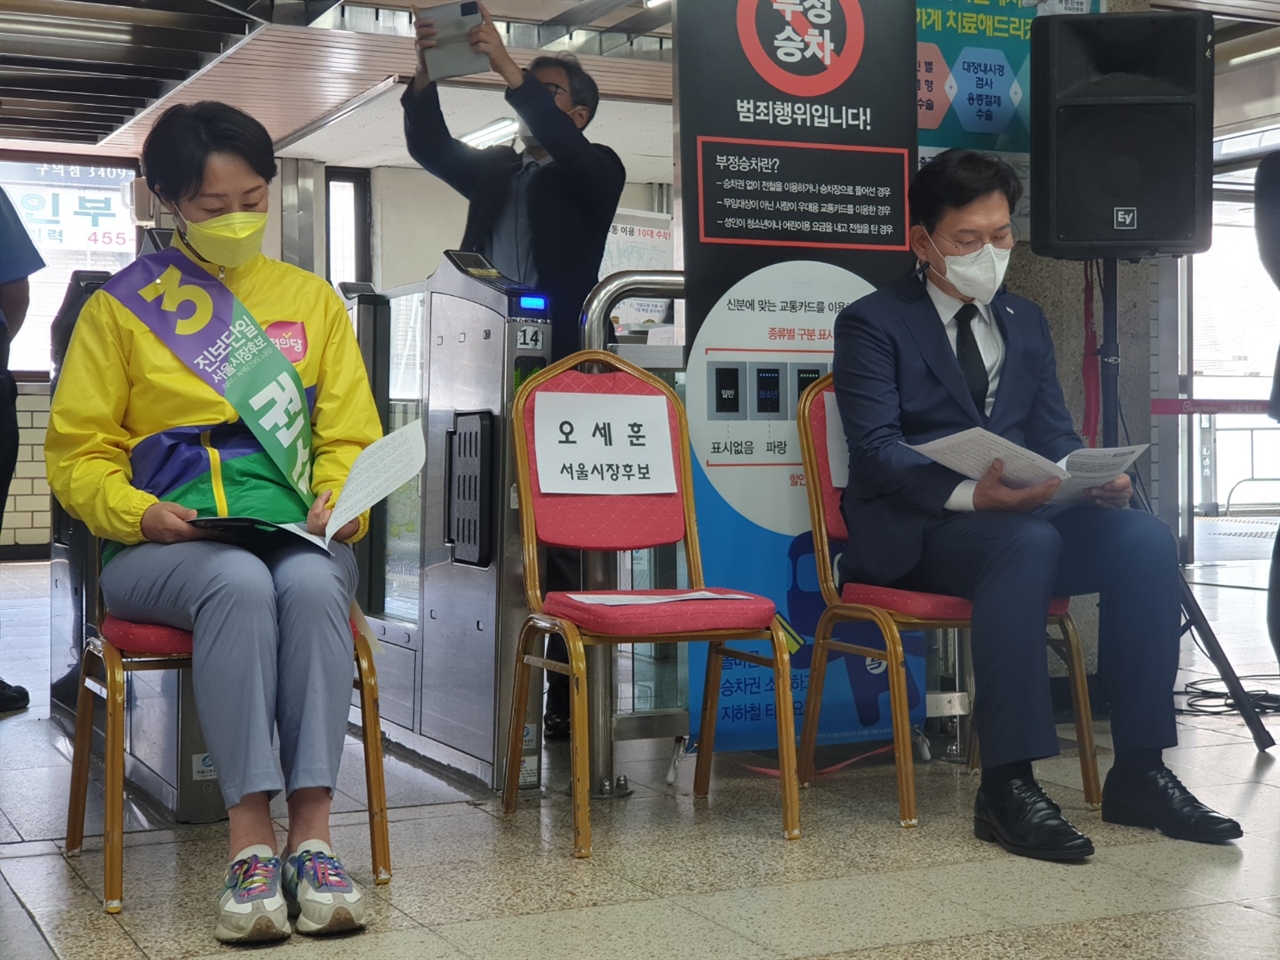 28일 서울 구의역 2층 대합실에서 열린 '생명안전 시민 약속식'. 오세훈 국민의힘 후보는 참석하지 않았다.